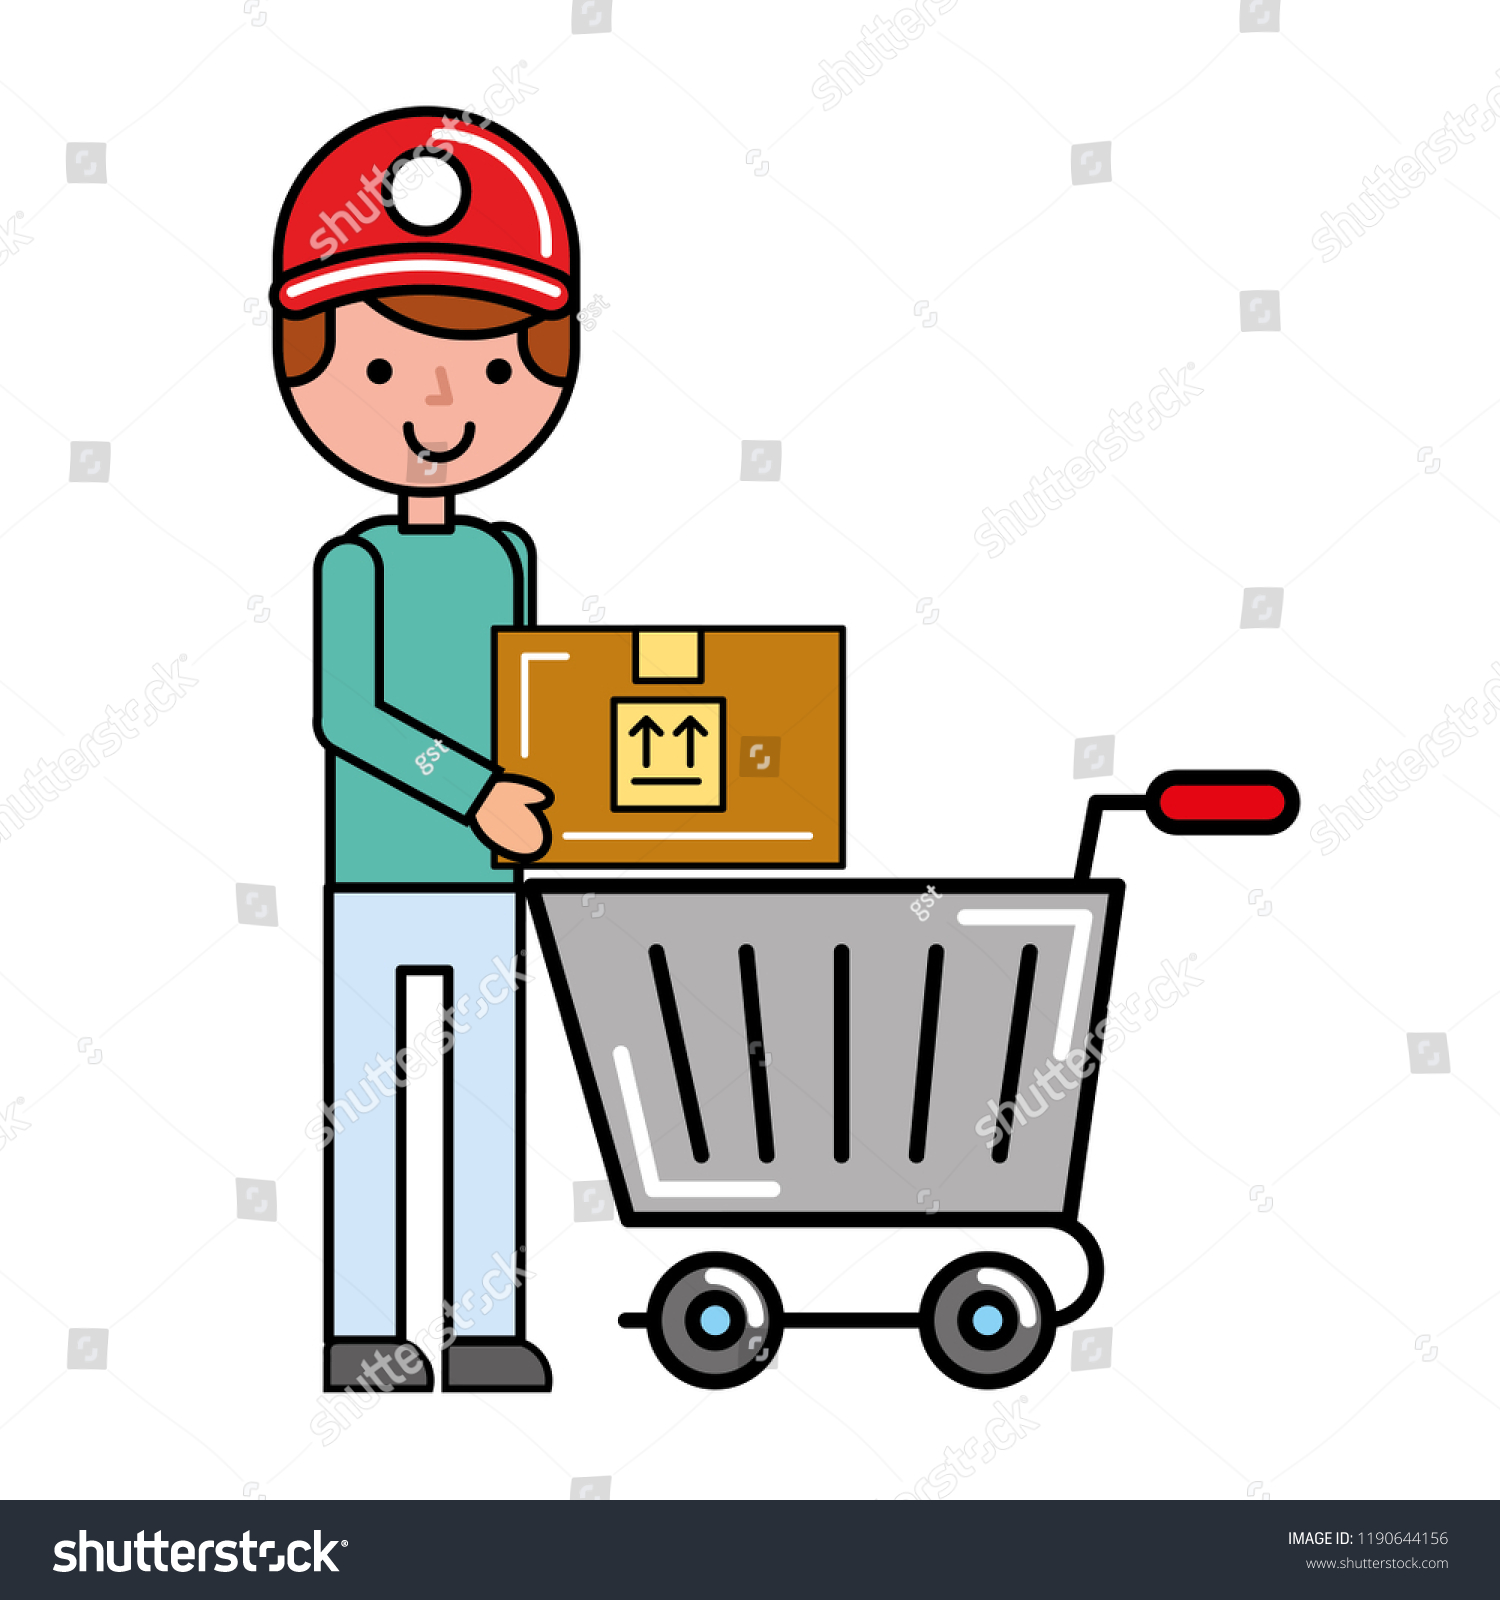 Man Online Shopping Cart Stock Free) 1190644156